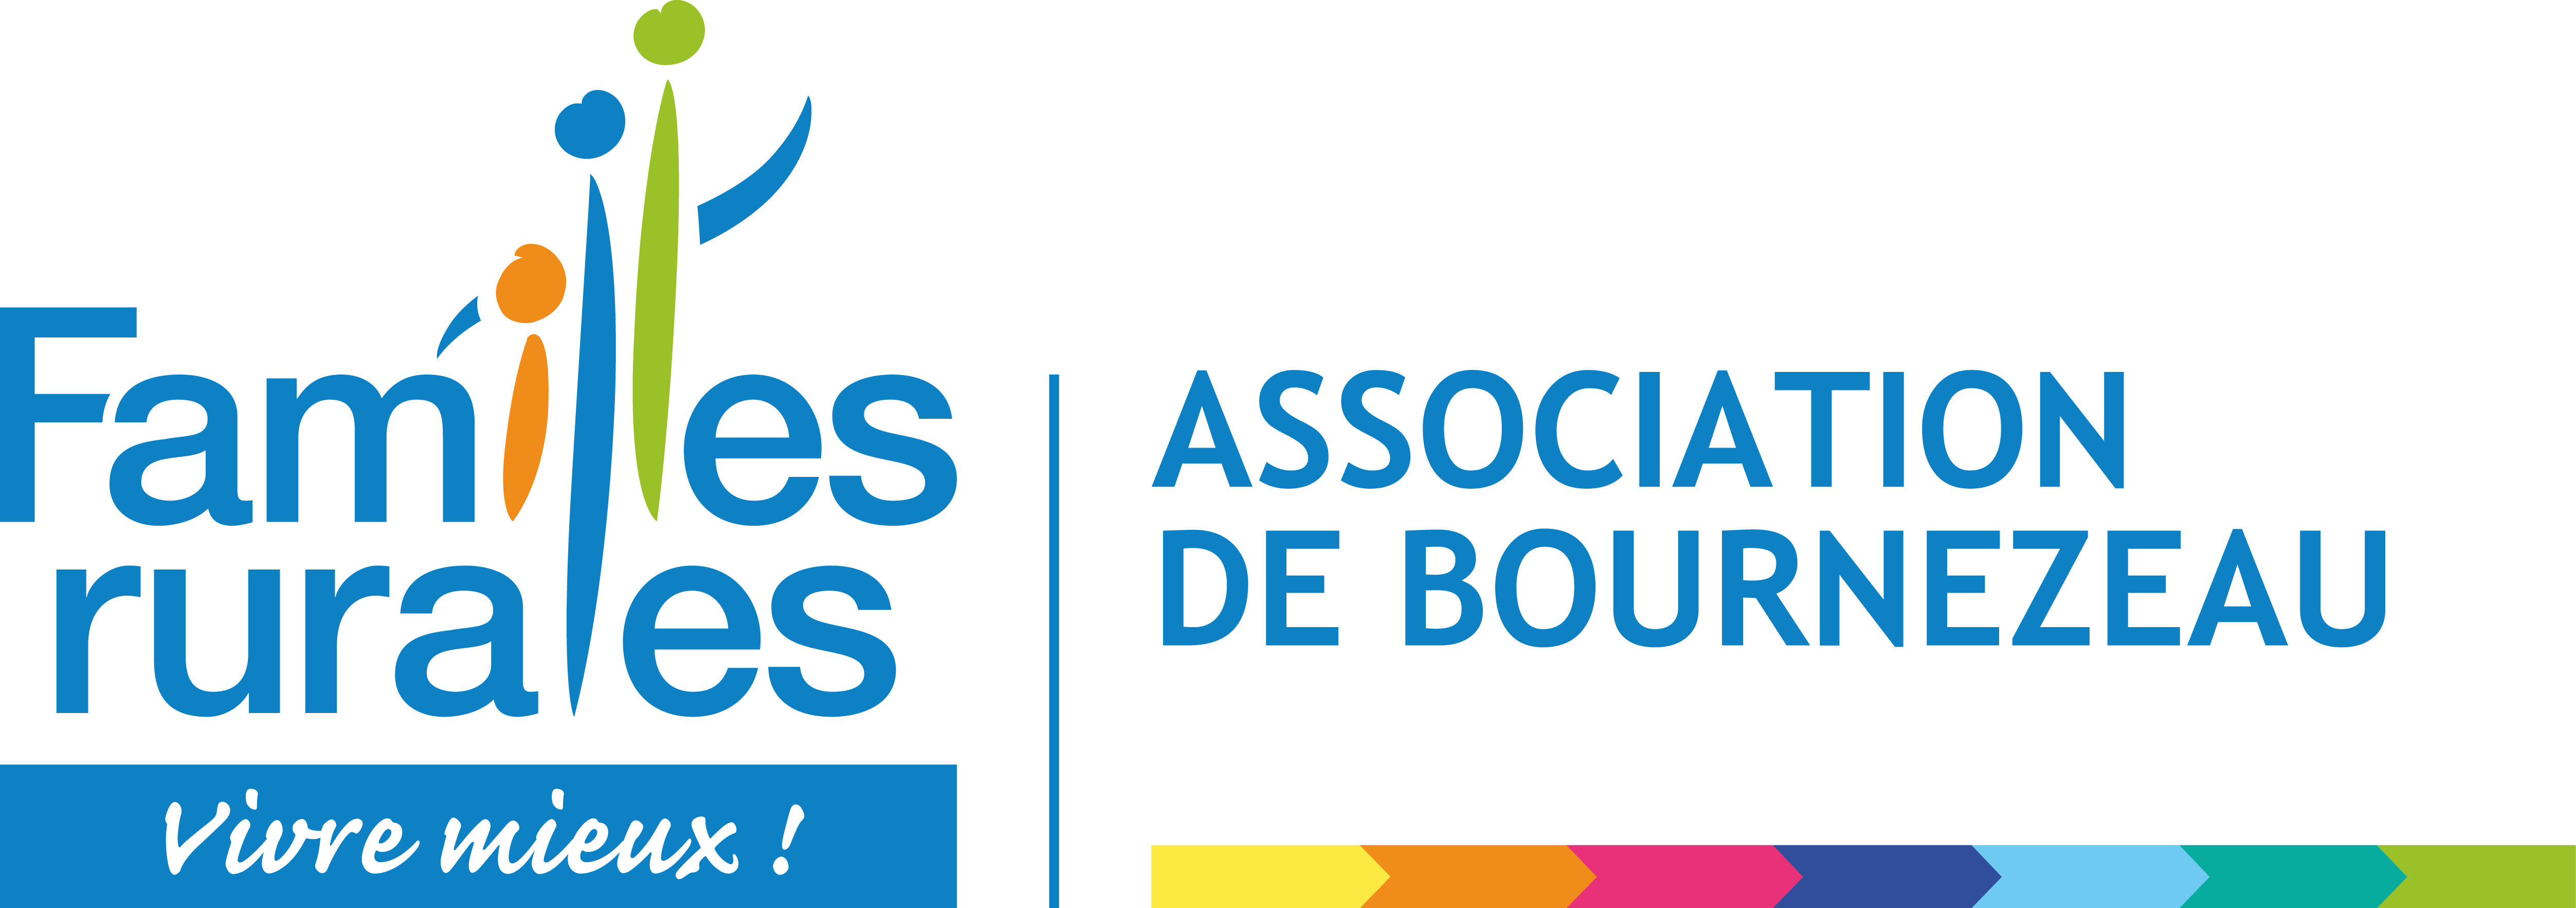 Logo Bournezeau